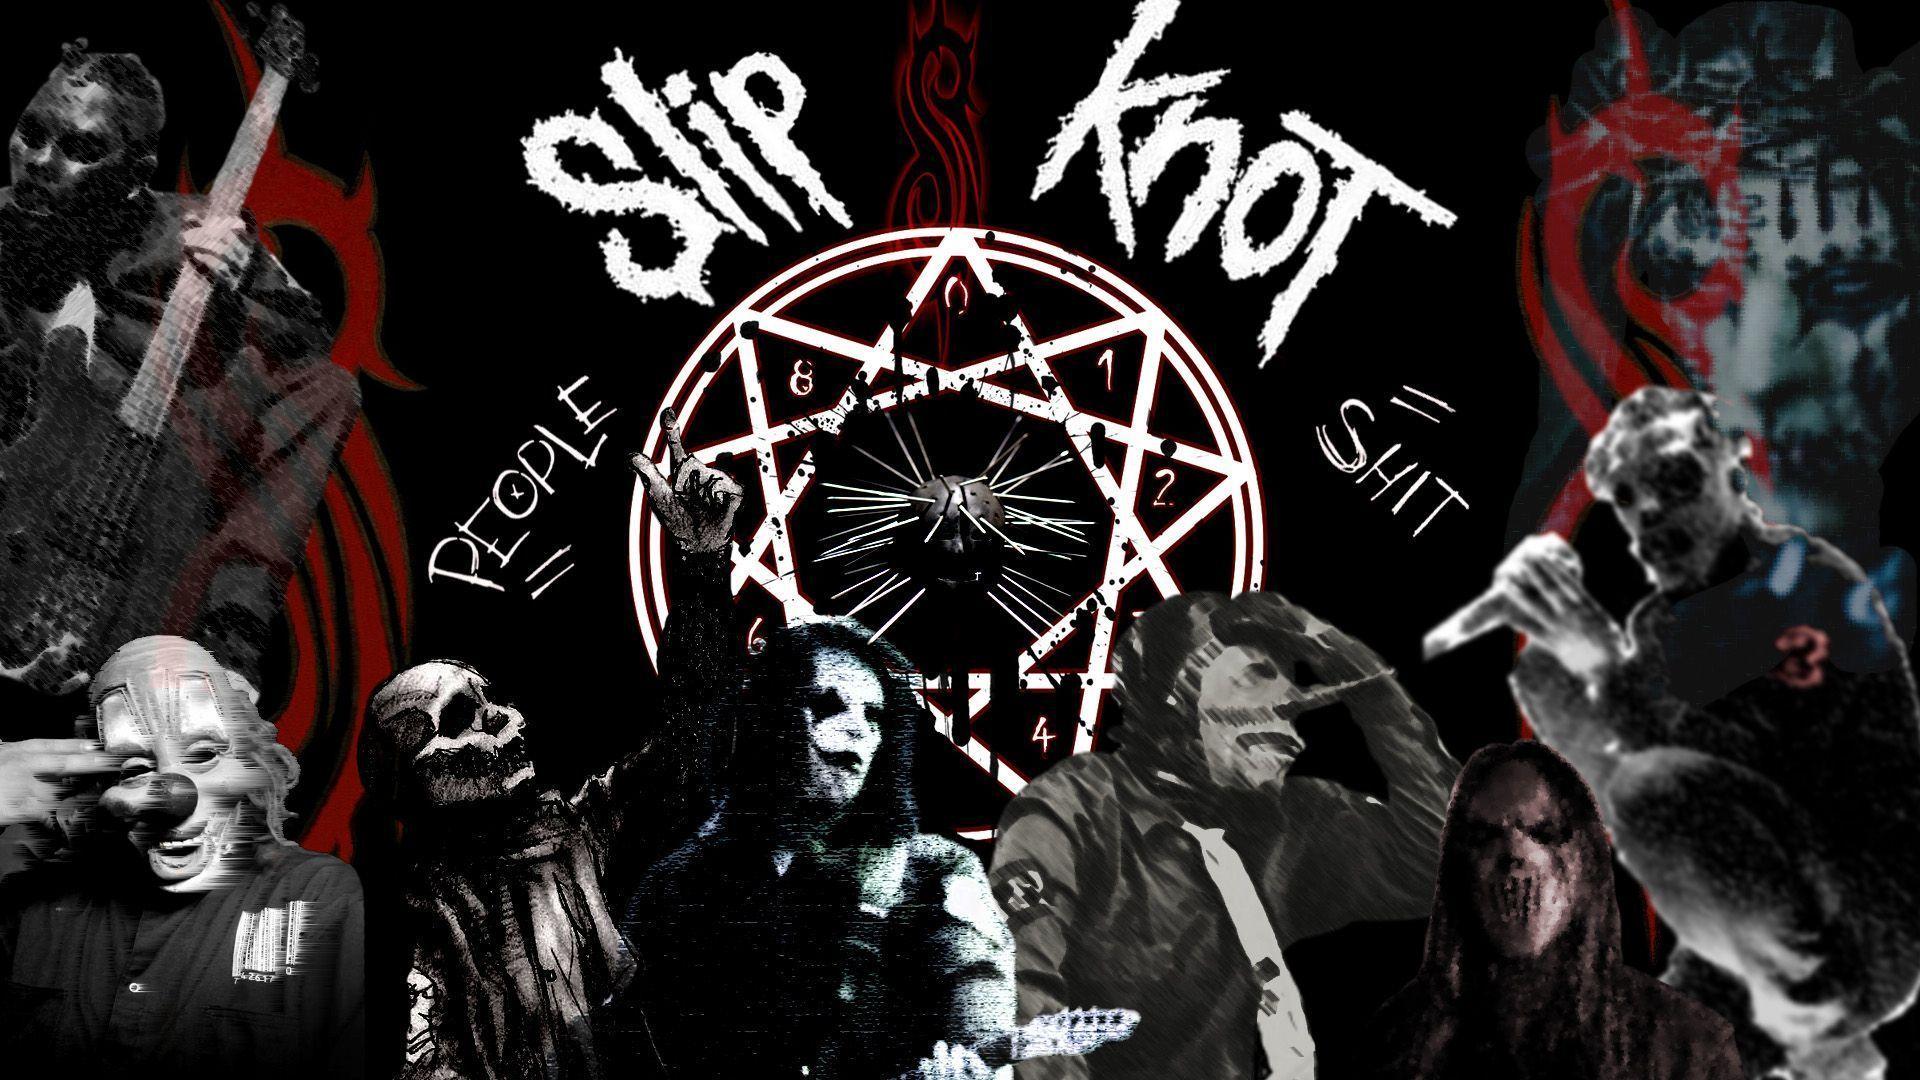 Slipknot Image Collection: Slipknot Wallpaper